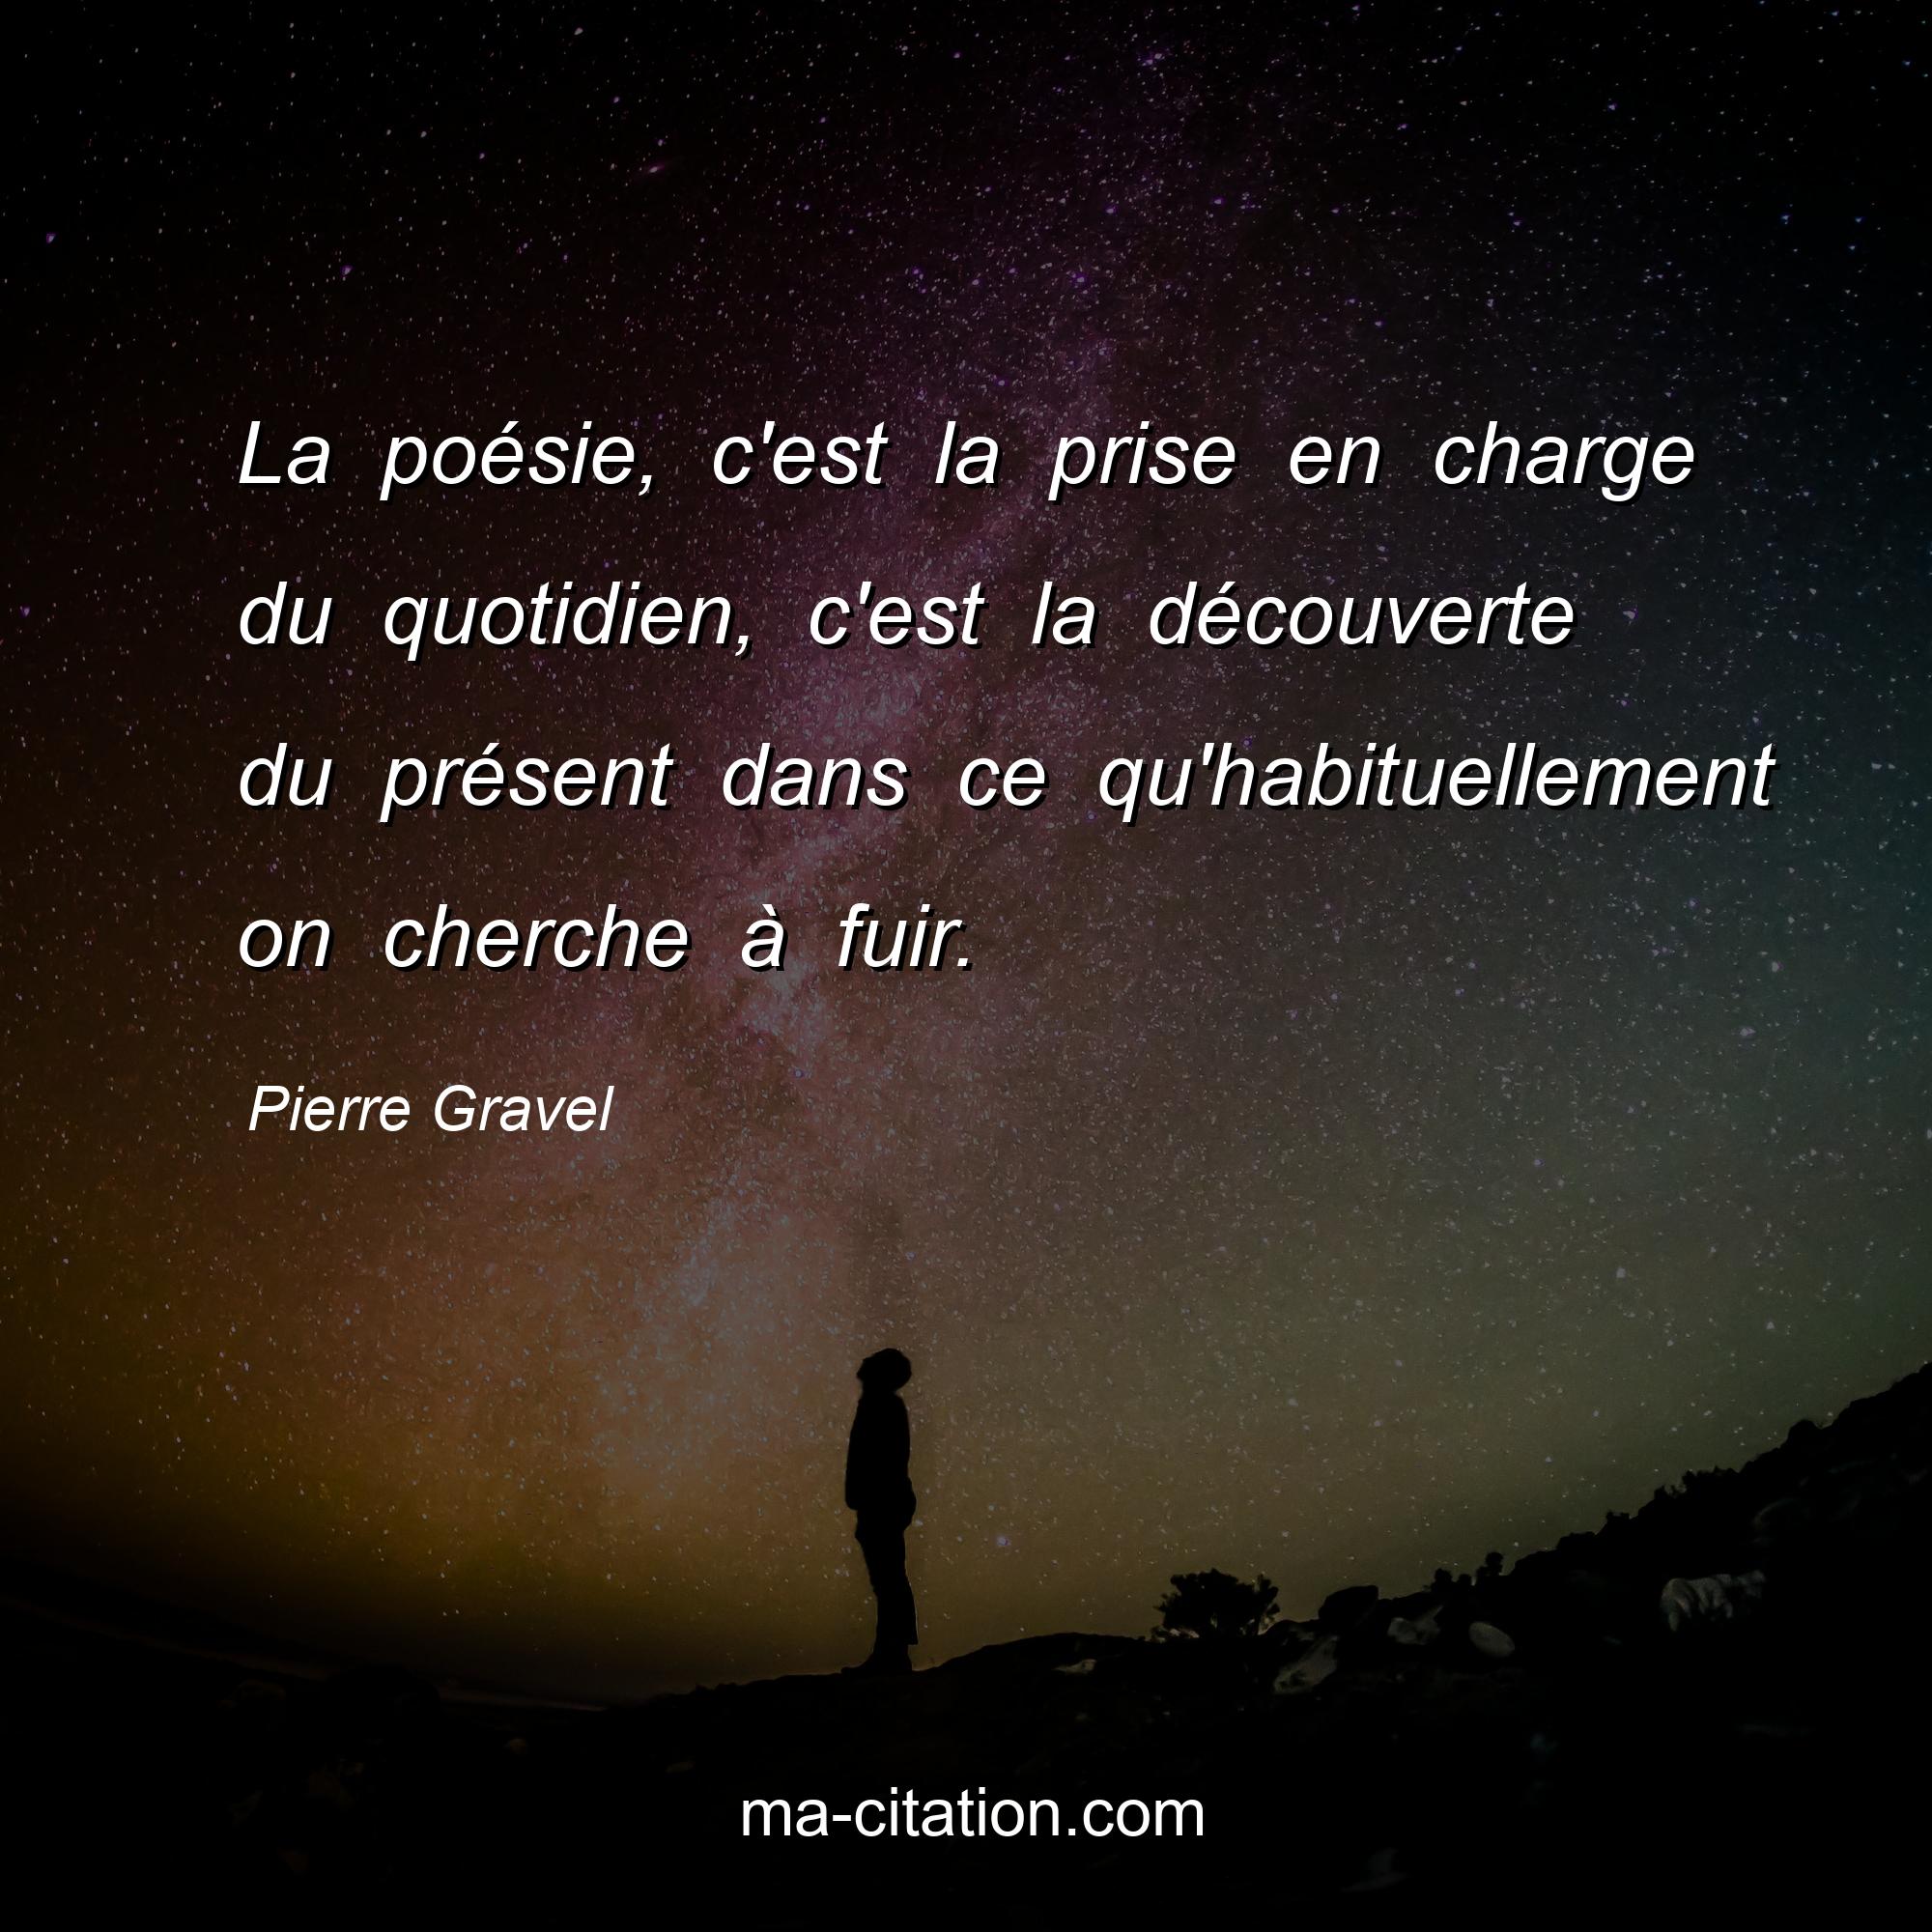 Pierre Gravel : La poésie, c'est la prise en charge du quotidien, c'est la découverte du présent dans ce qu'habituellement on cherche à fuir.